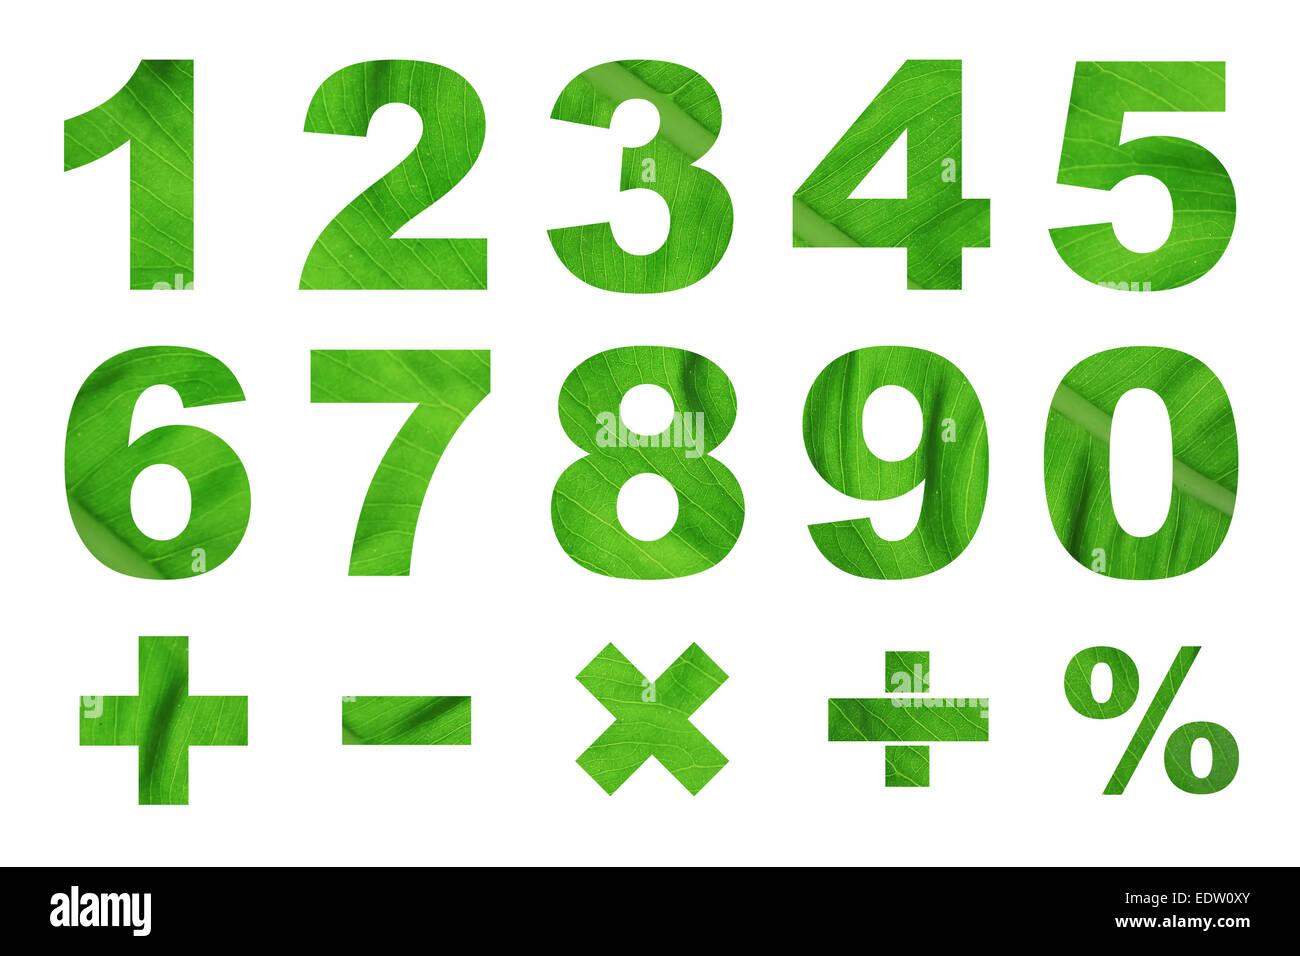 Un à zéro des chiffres et symboles mathématiques de base fabriqués à partir de feuille verte photo Banque D'Images